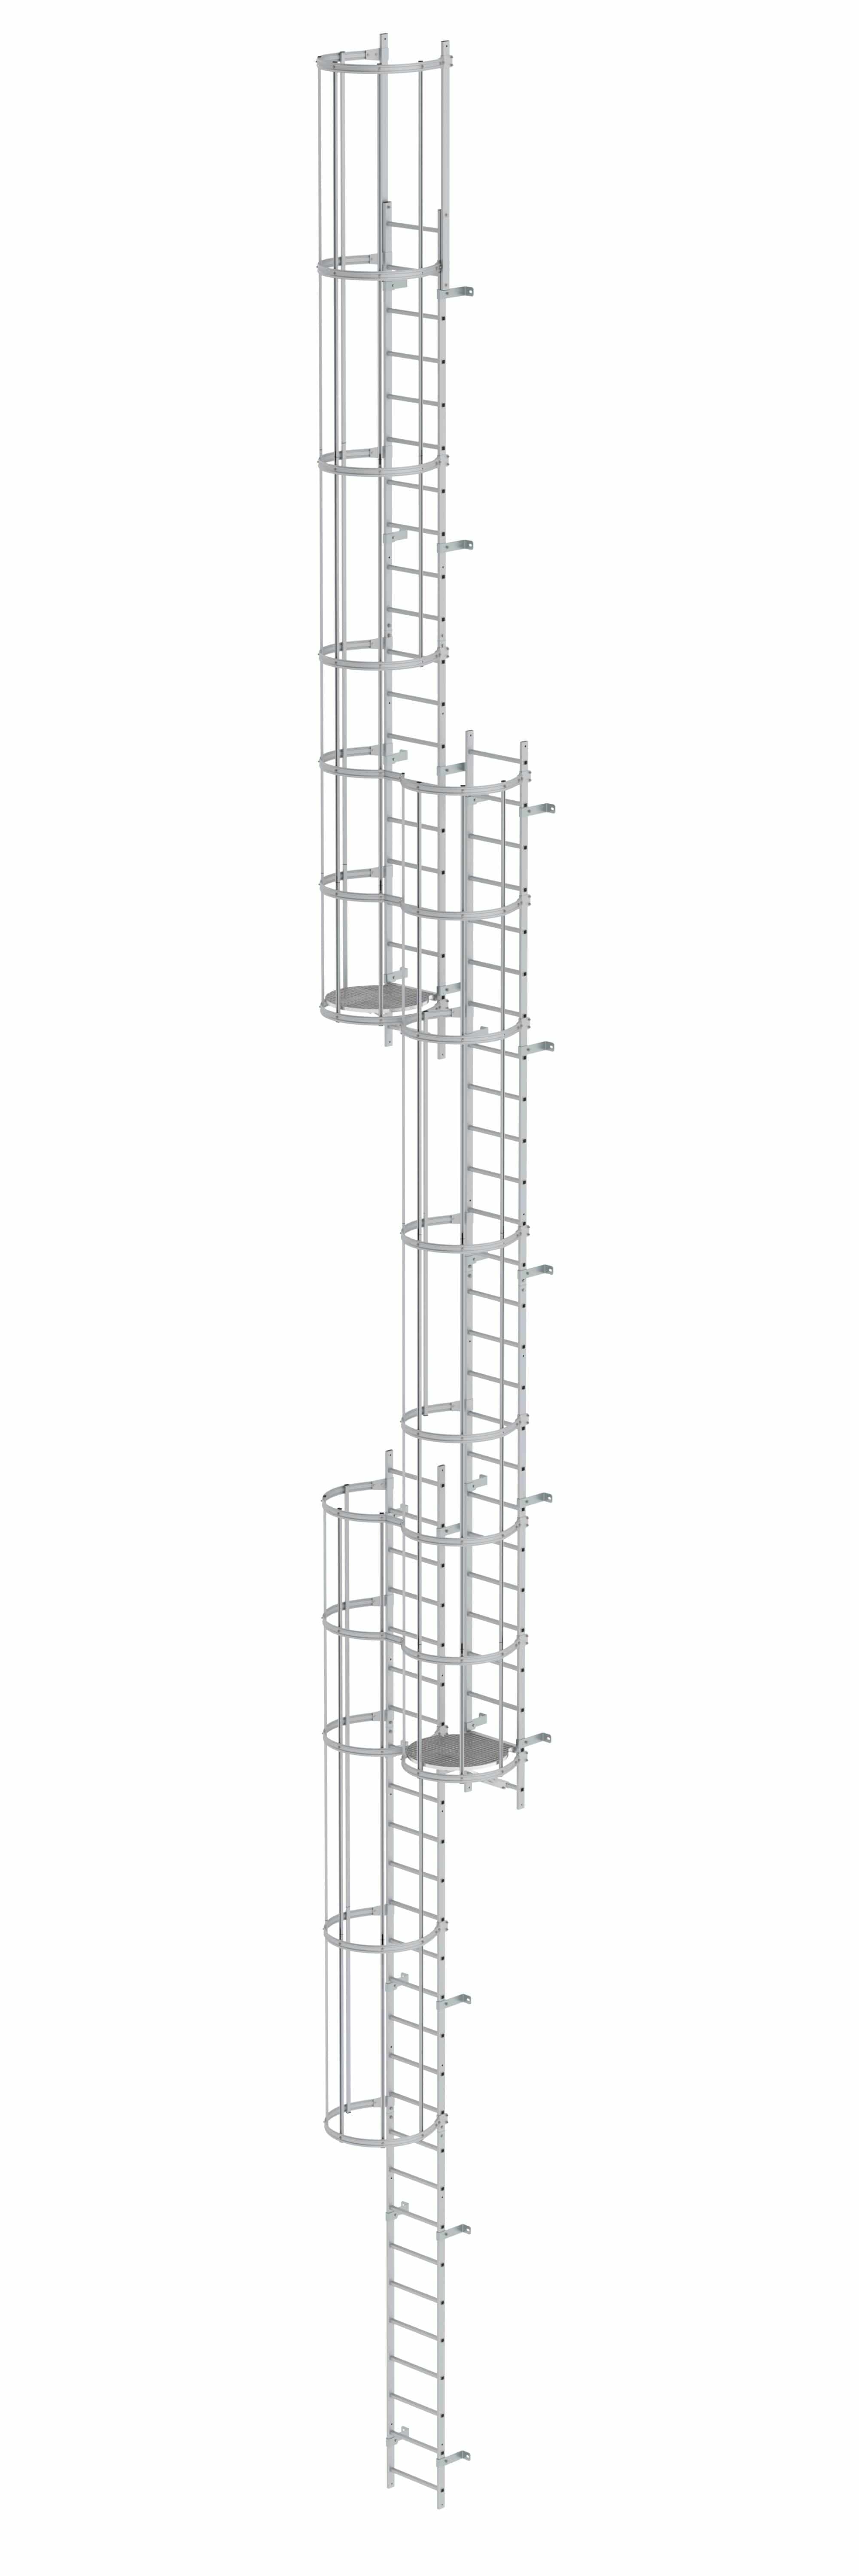 Munk Mehrzügige Steigleiter mit Rückenschutz (Notleiter) Aluminium eloxiert 17,16m